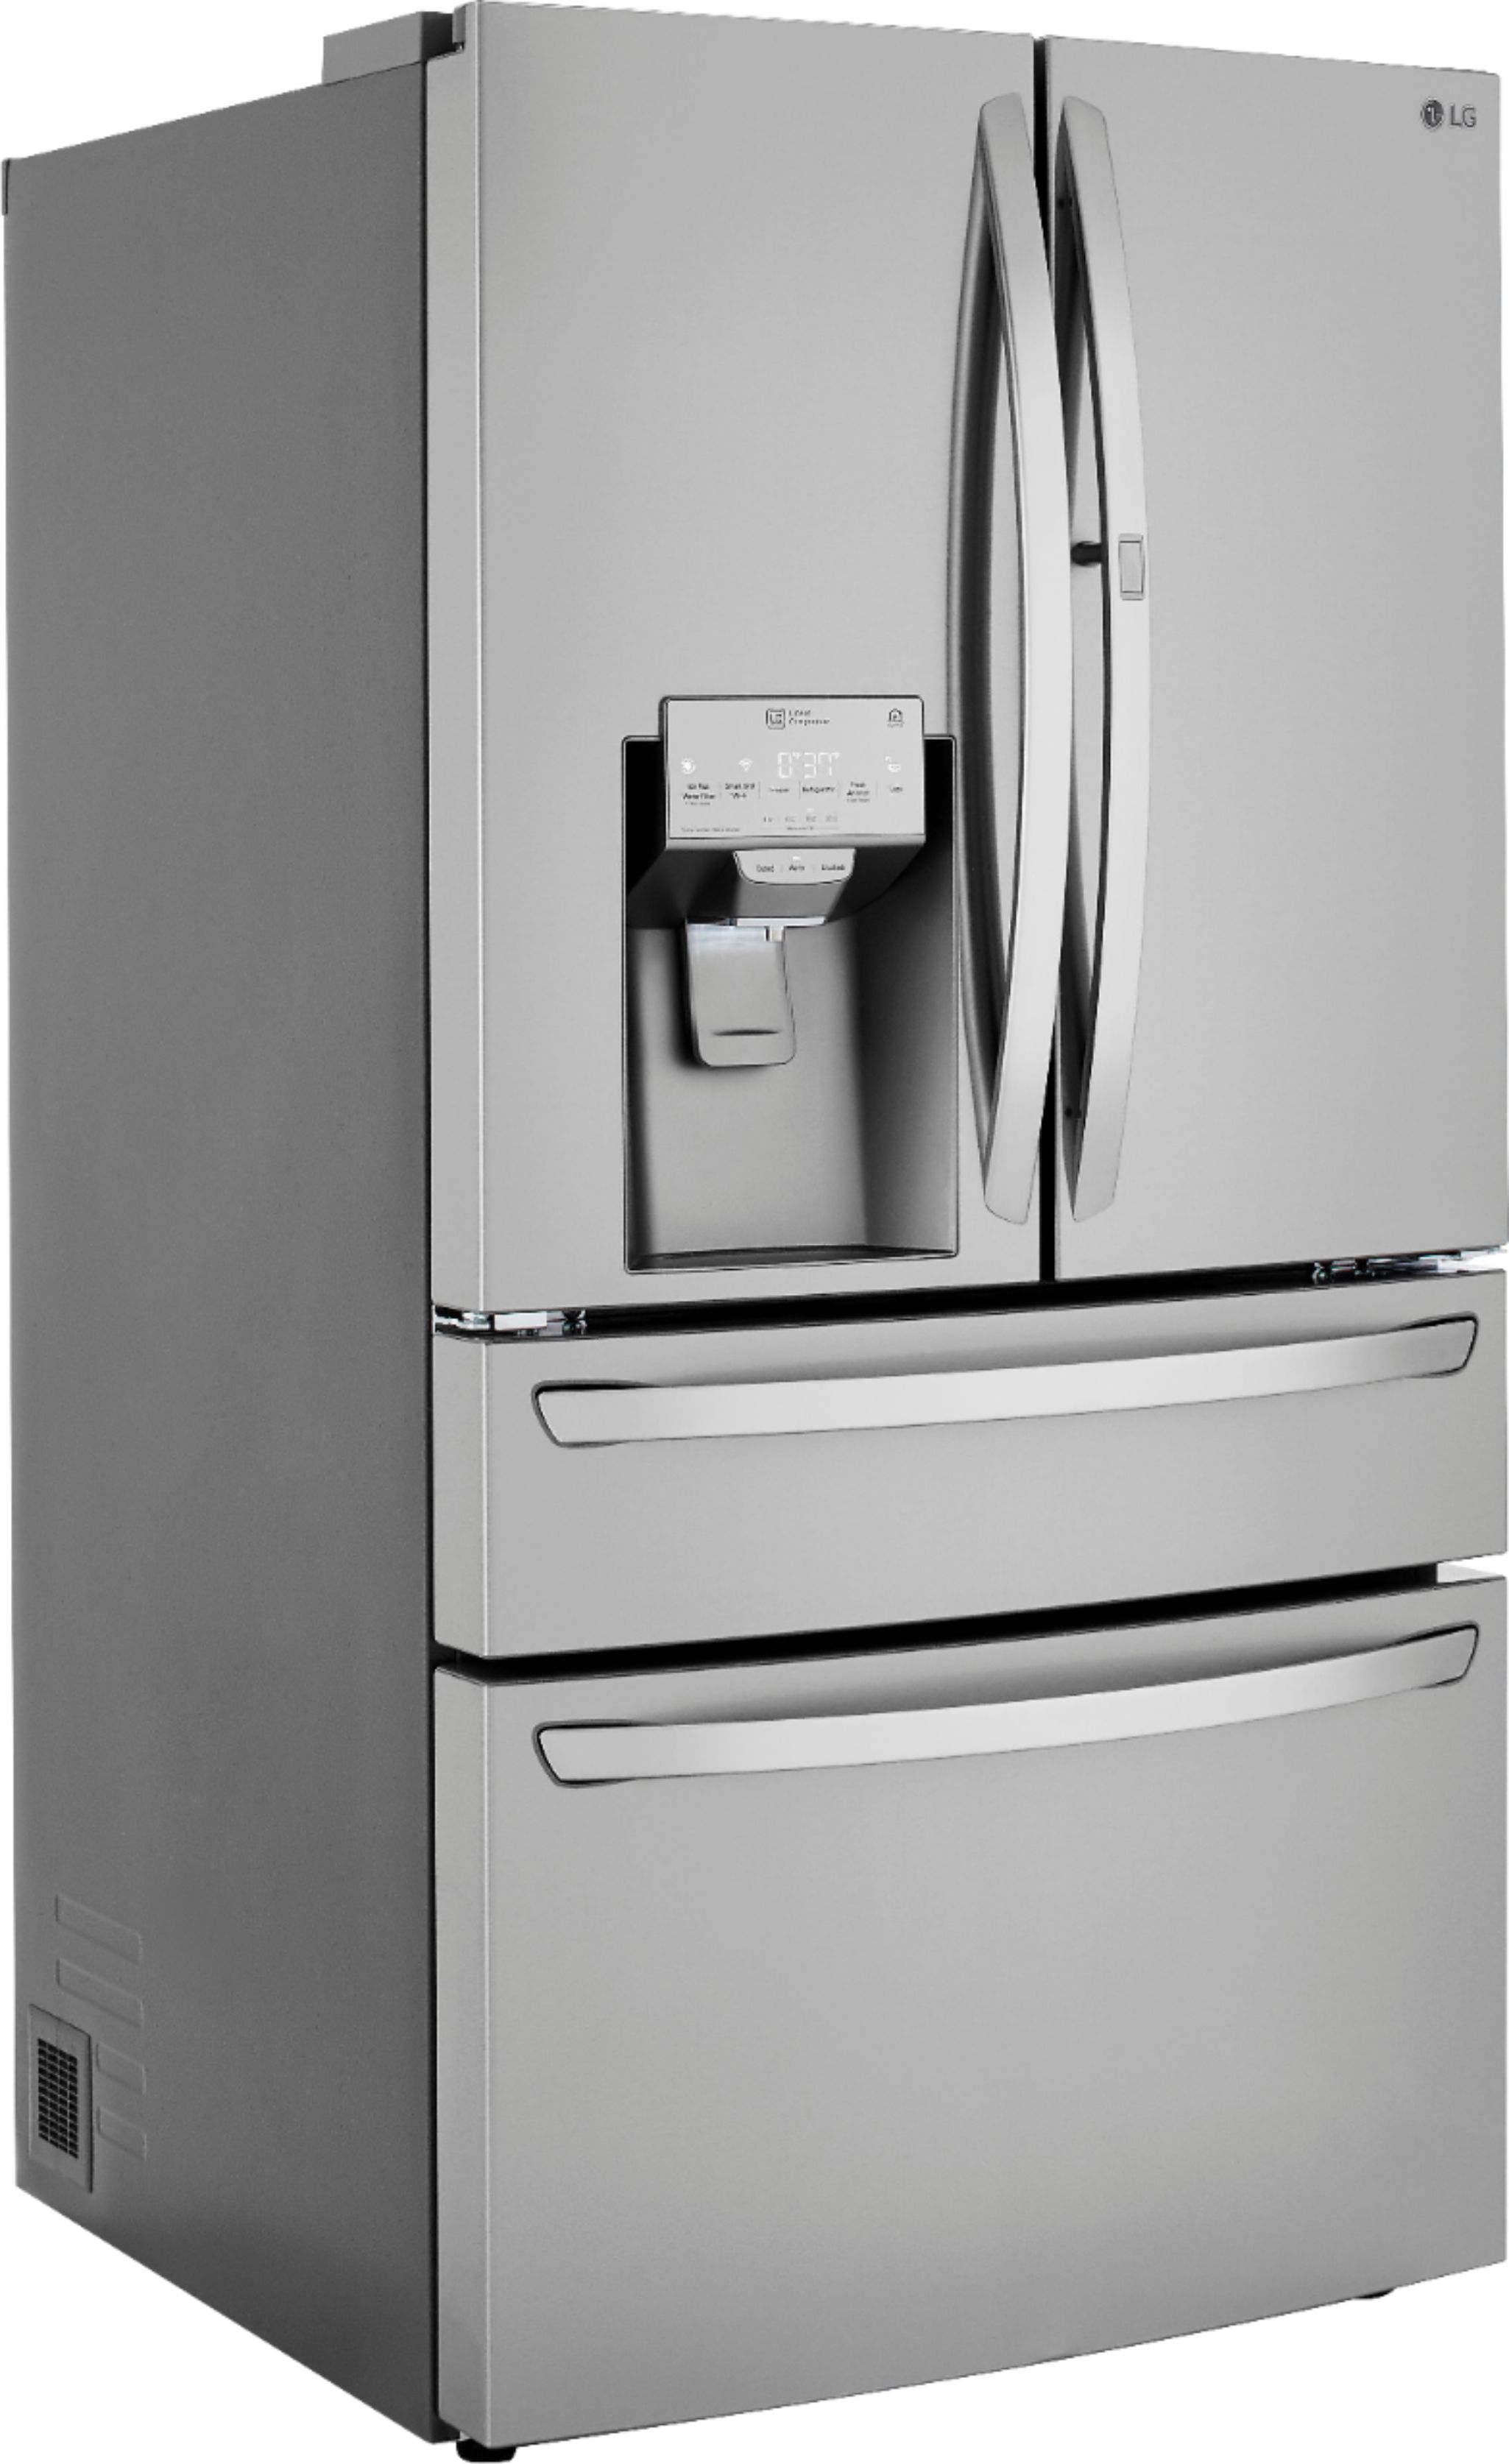 Angle View: LG - 22.5 Cu. Ft. 4-Door French Door-in-Door Counter-Depth Refrigerator with Craft Ice - Stainless Steel